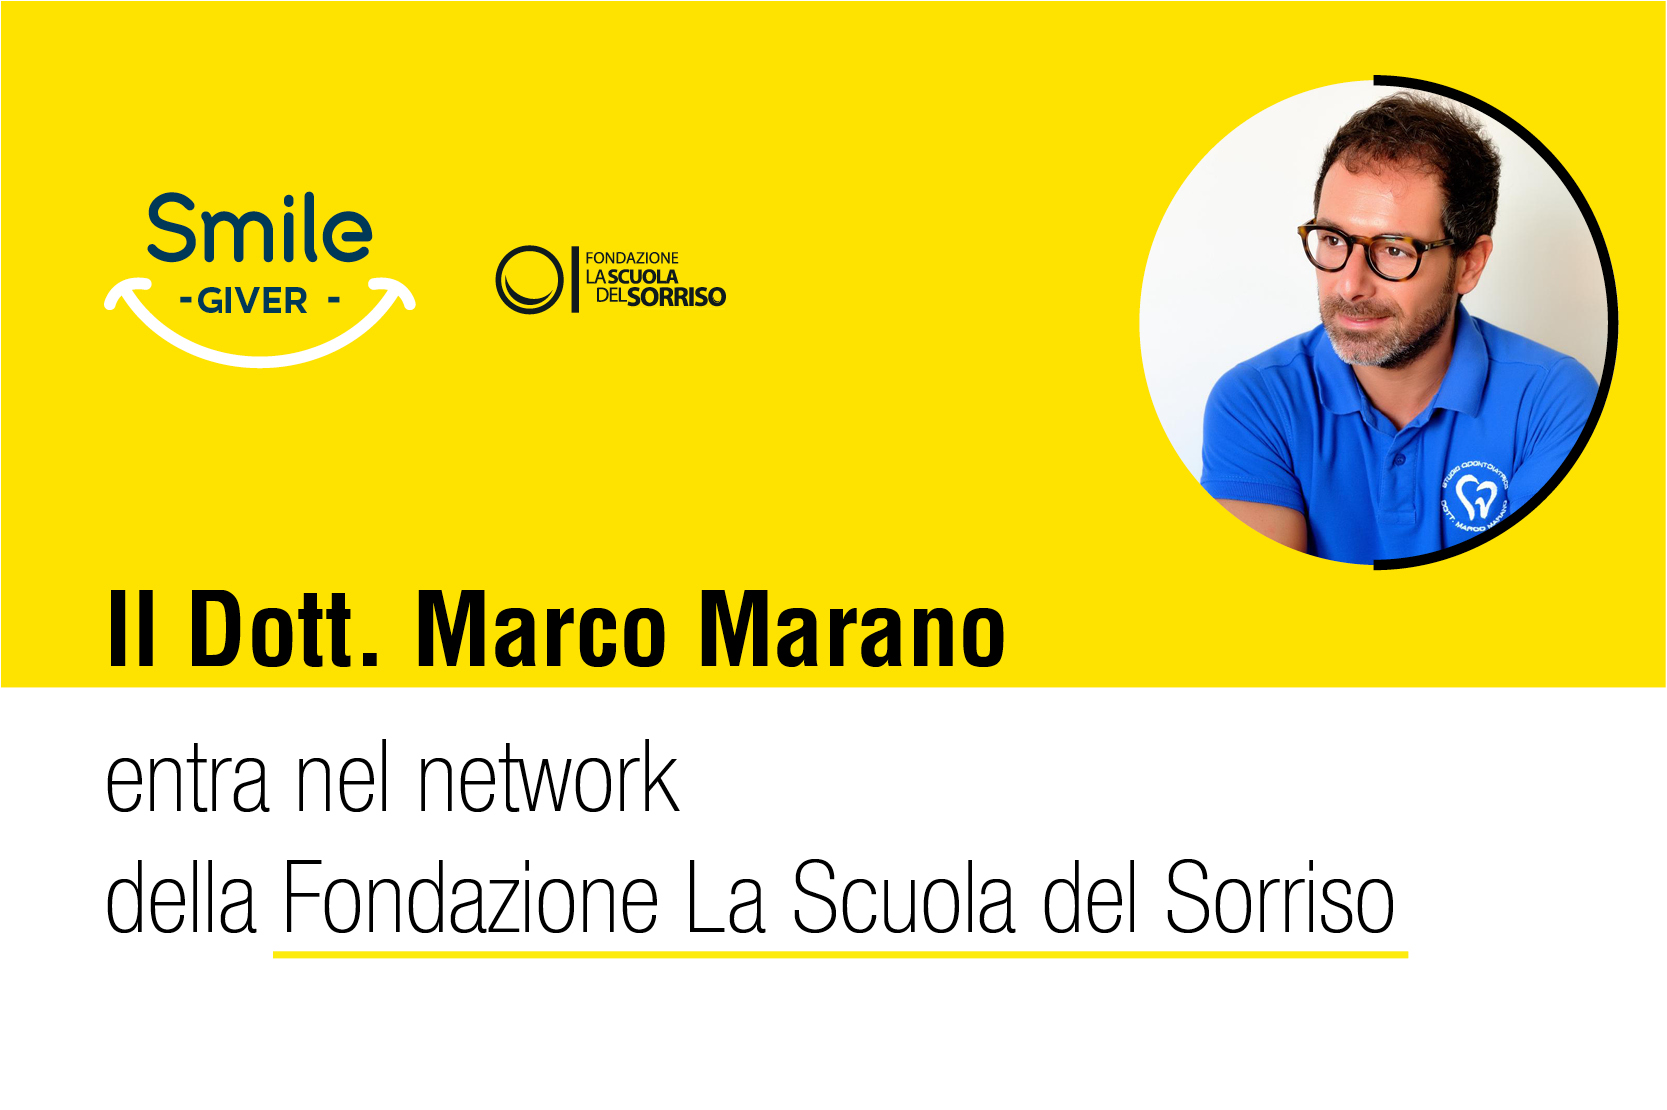 Il dottor Marco Marano di Cellole (CE) entra nel network della Fondazione La Scuola del Sorriso